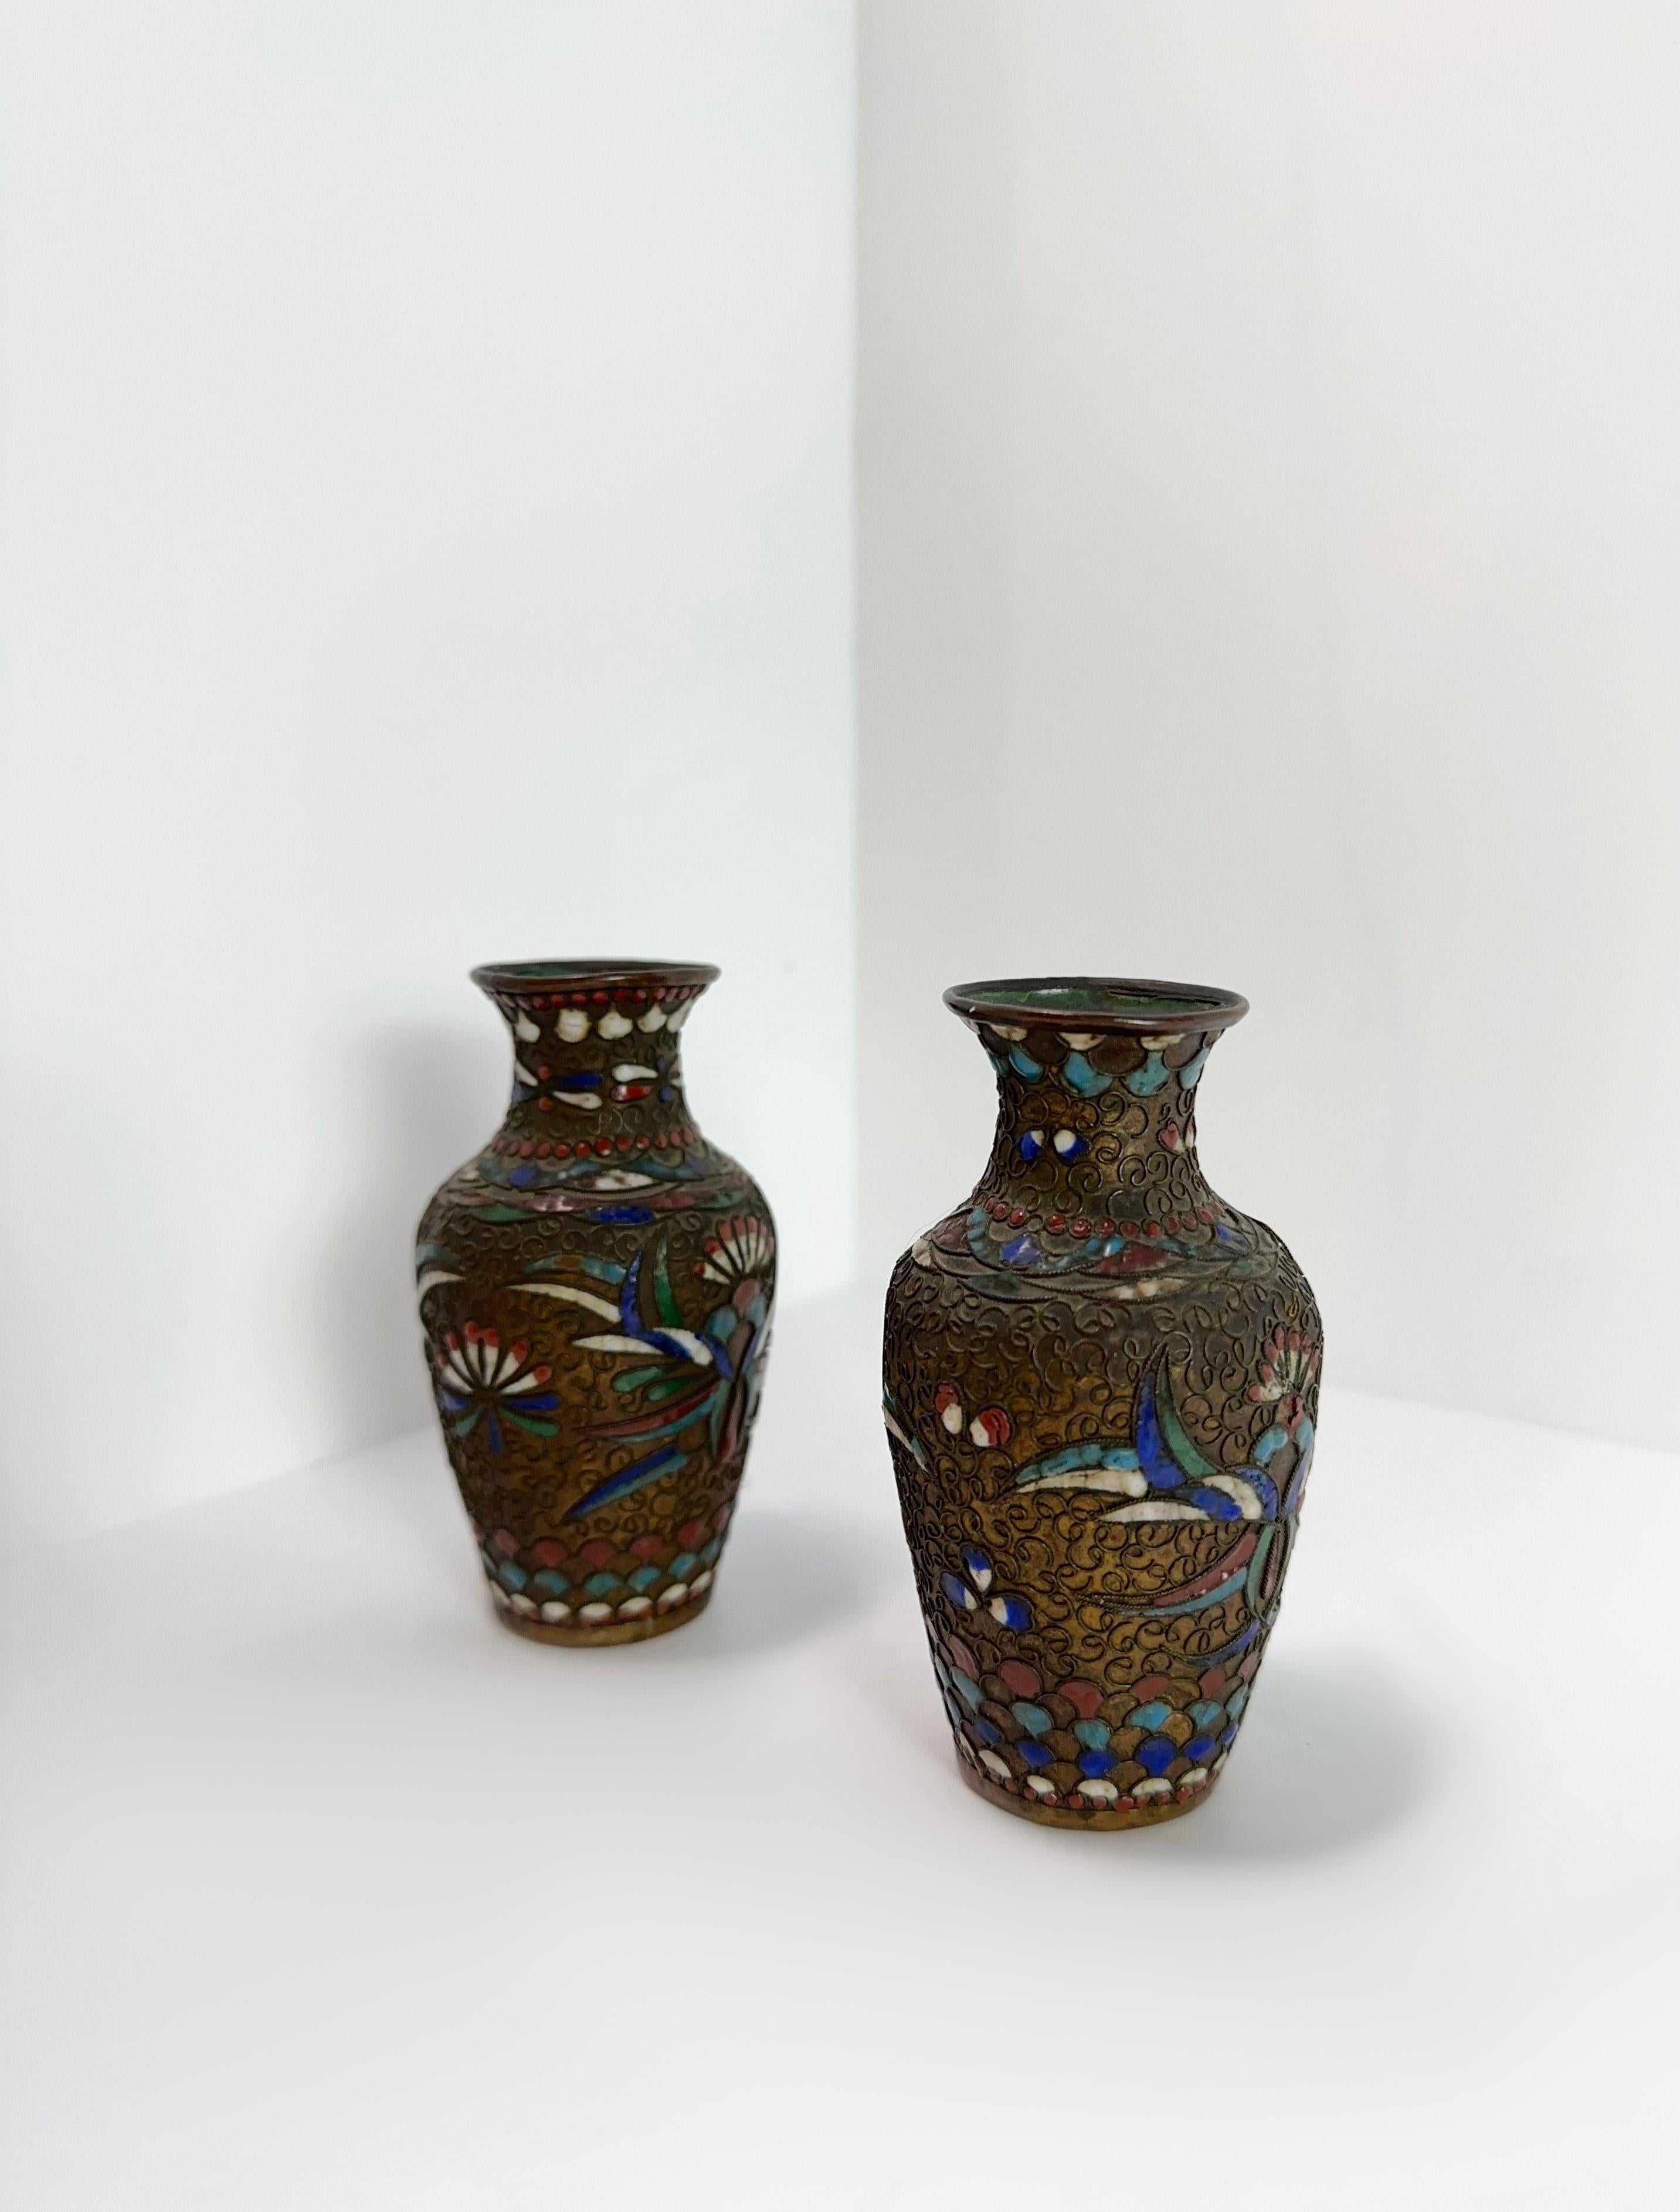 Découvrez nos vases champlevés miniatures en bronze antique - de minuscules voyageurs temporels de la fin des années 1800 ! Fabriquées par des mains expertes, ces petites merveilles racontent des histoires d'une époque révolue. Imaginez-les ornant